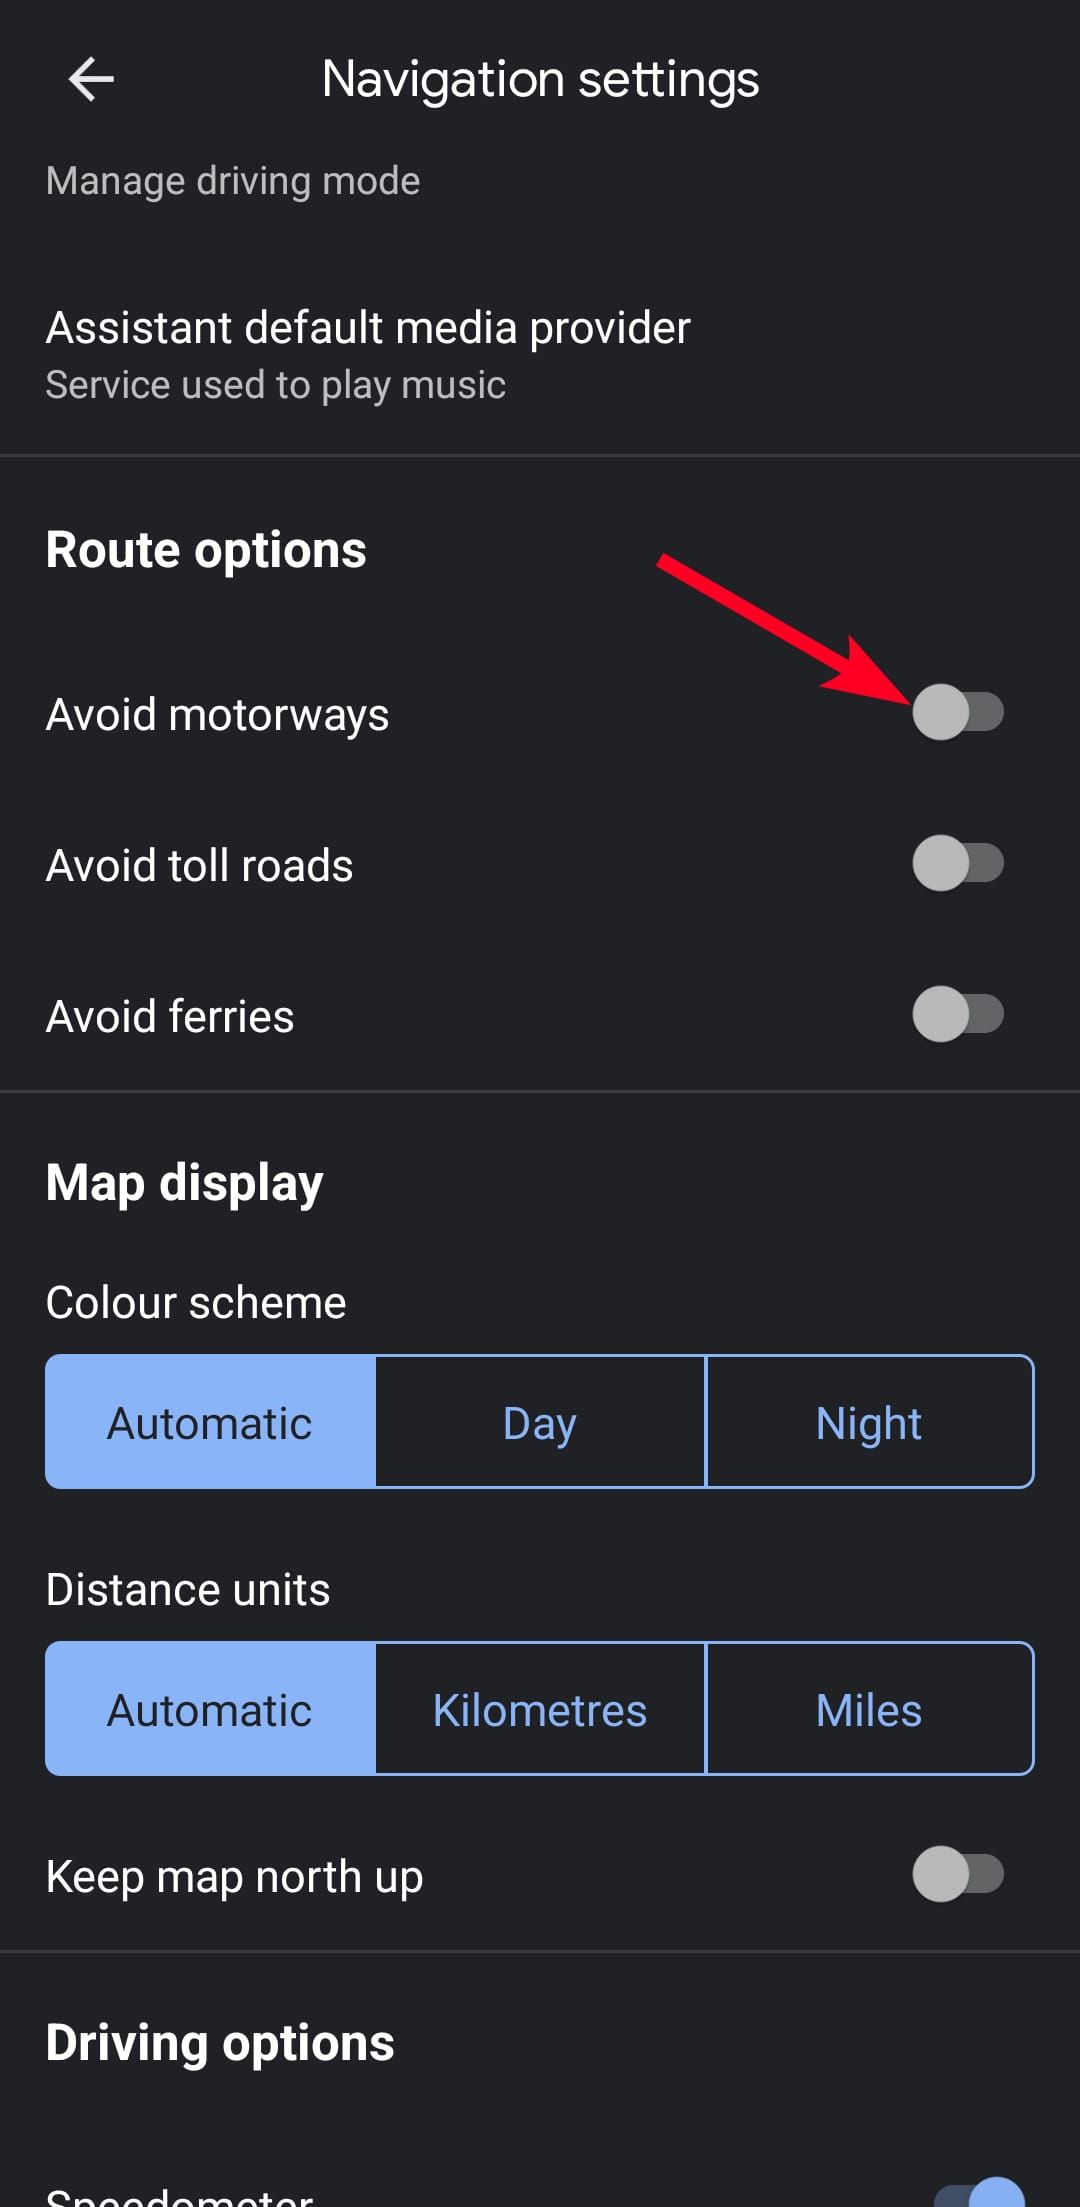 Navigation settings menu in Google Maps mobile app